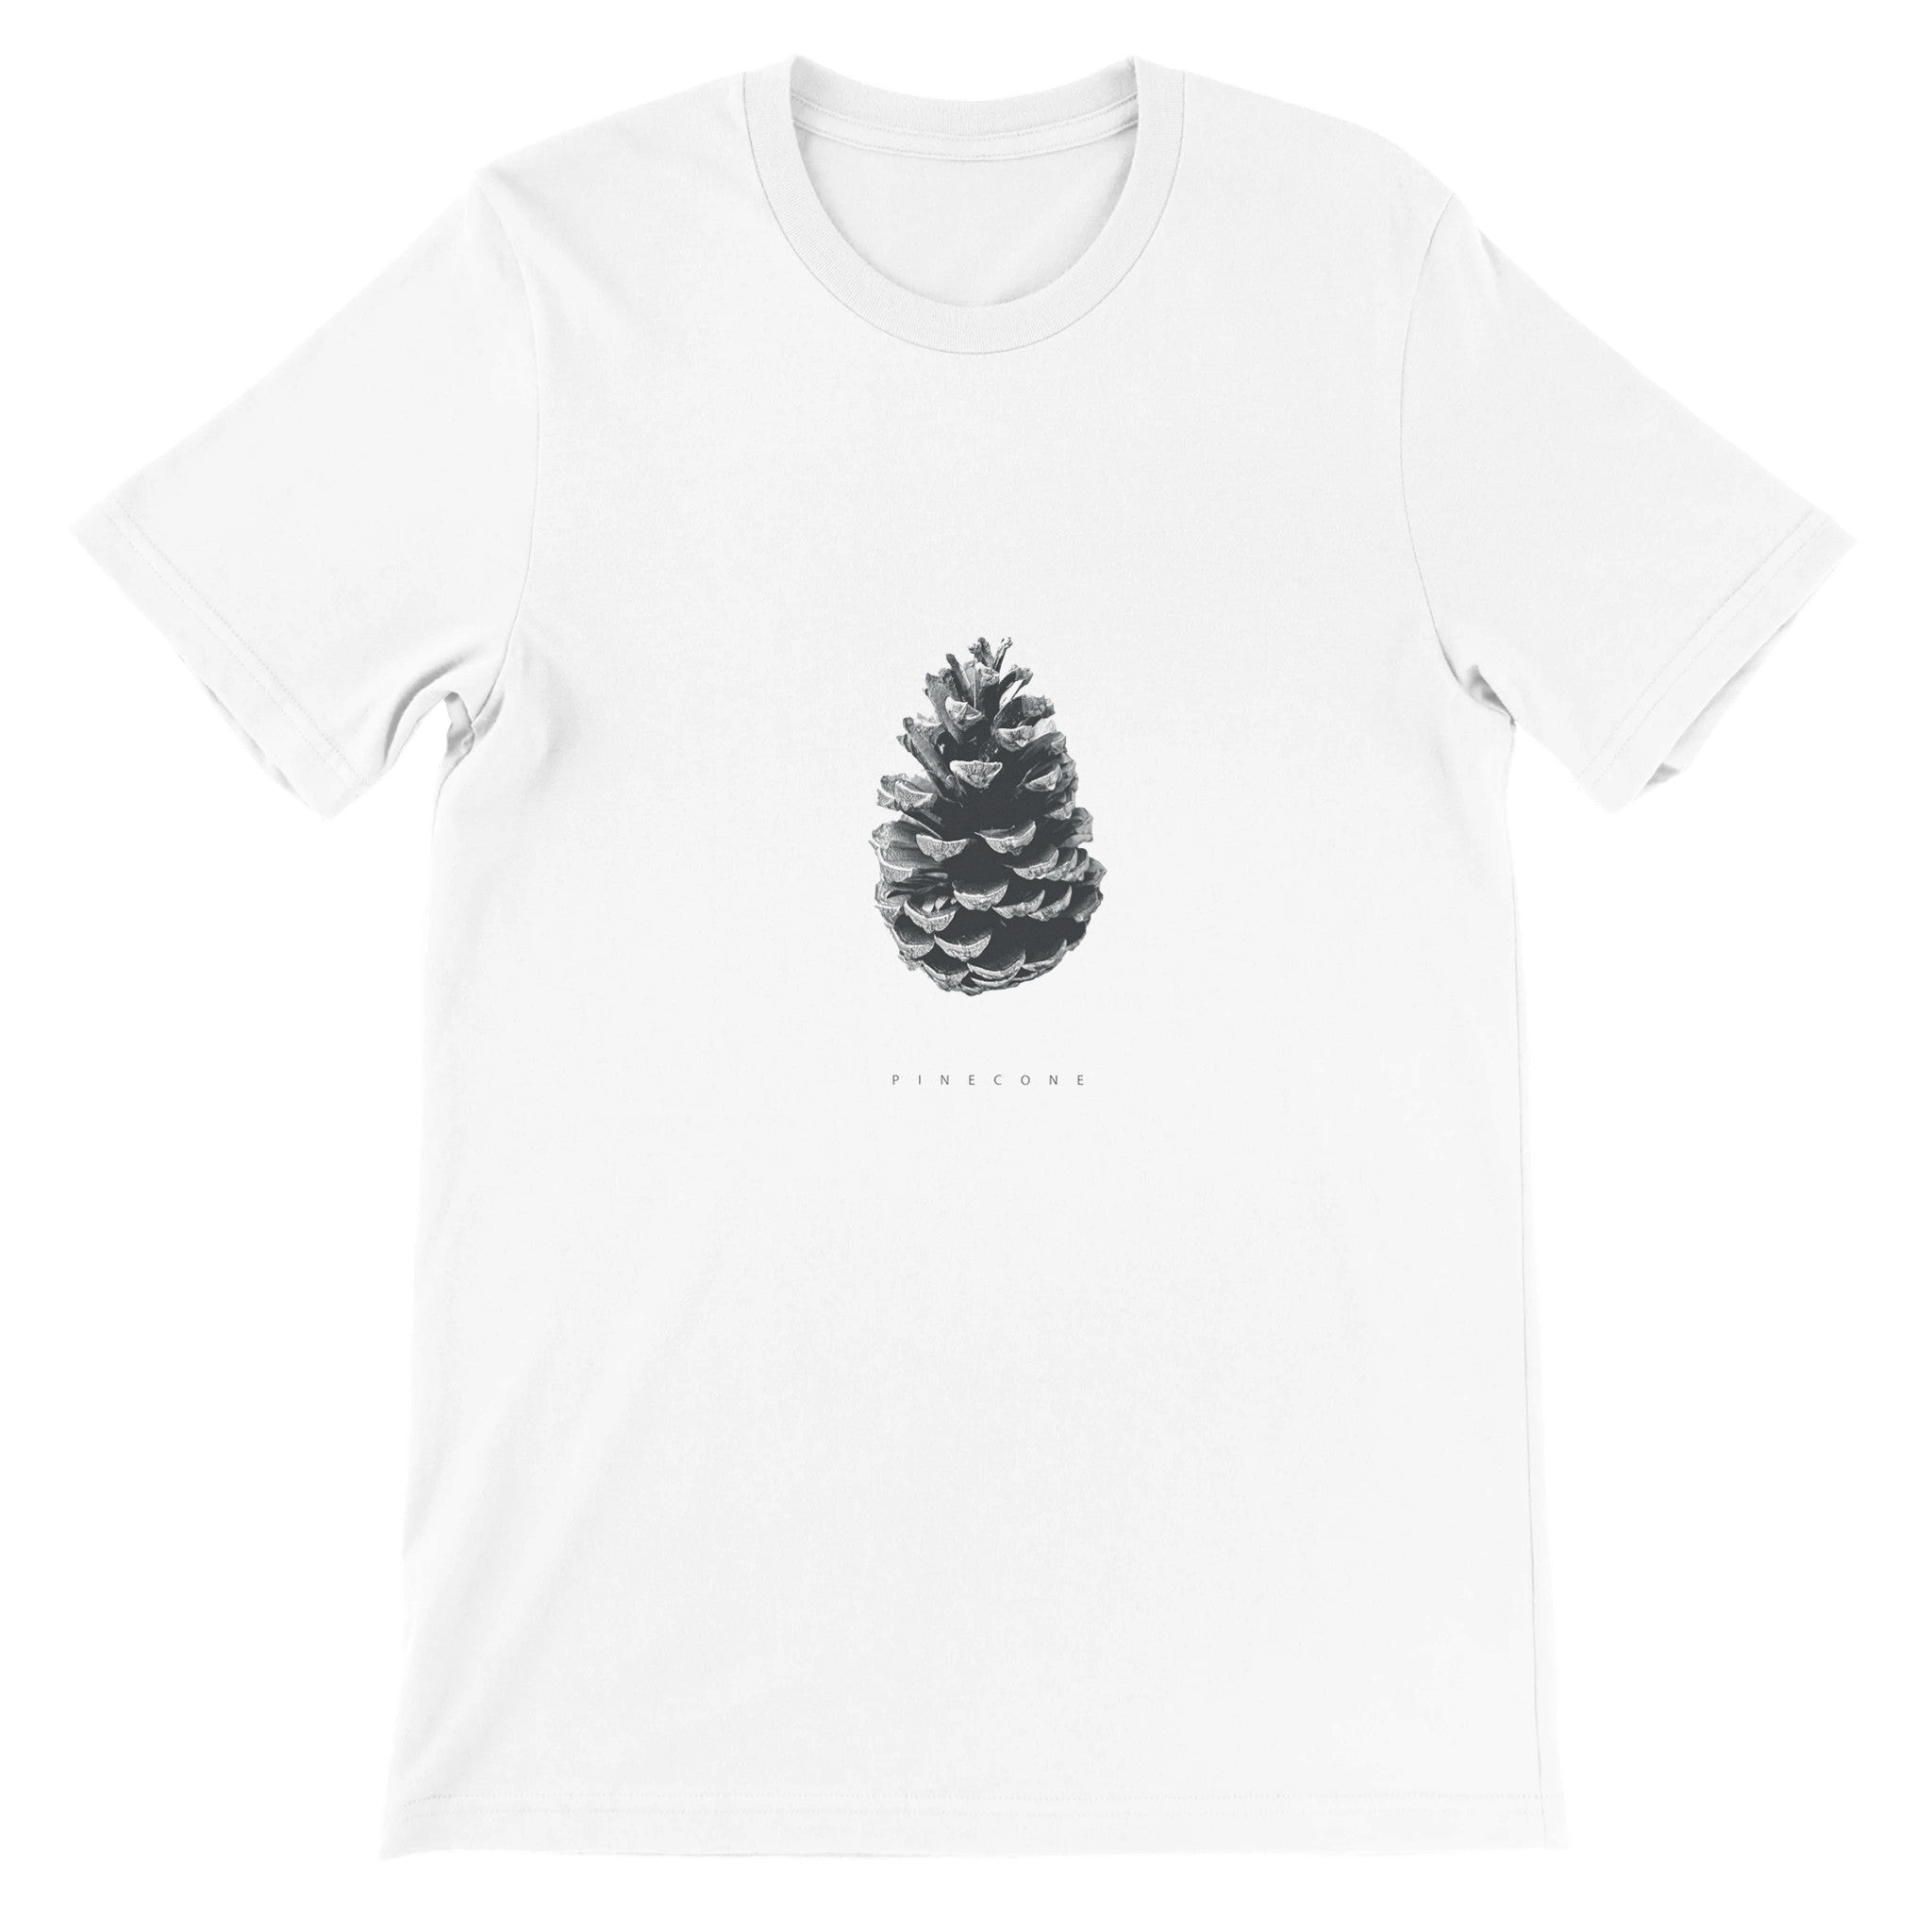 Pinecone Crewneck T-shirt - Optimalprint